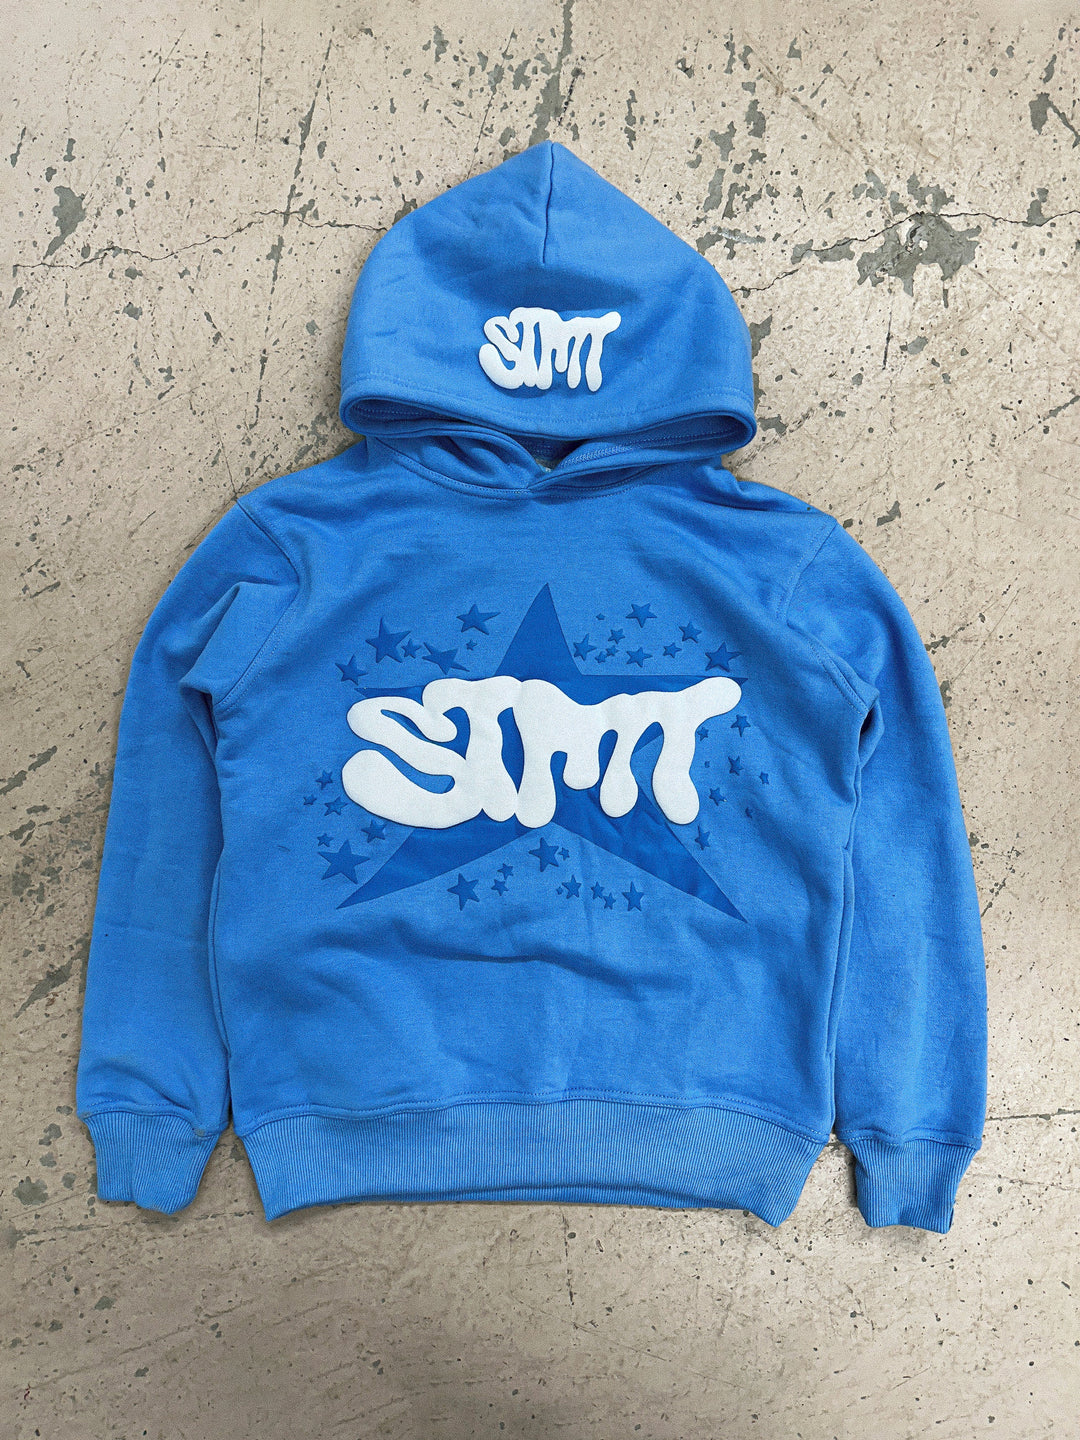 stmt ' sky ' hoodie - Statement